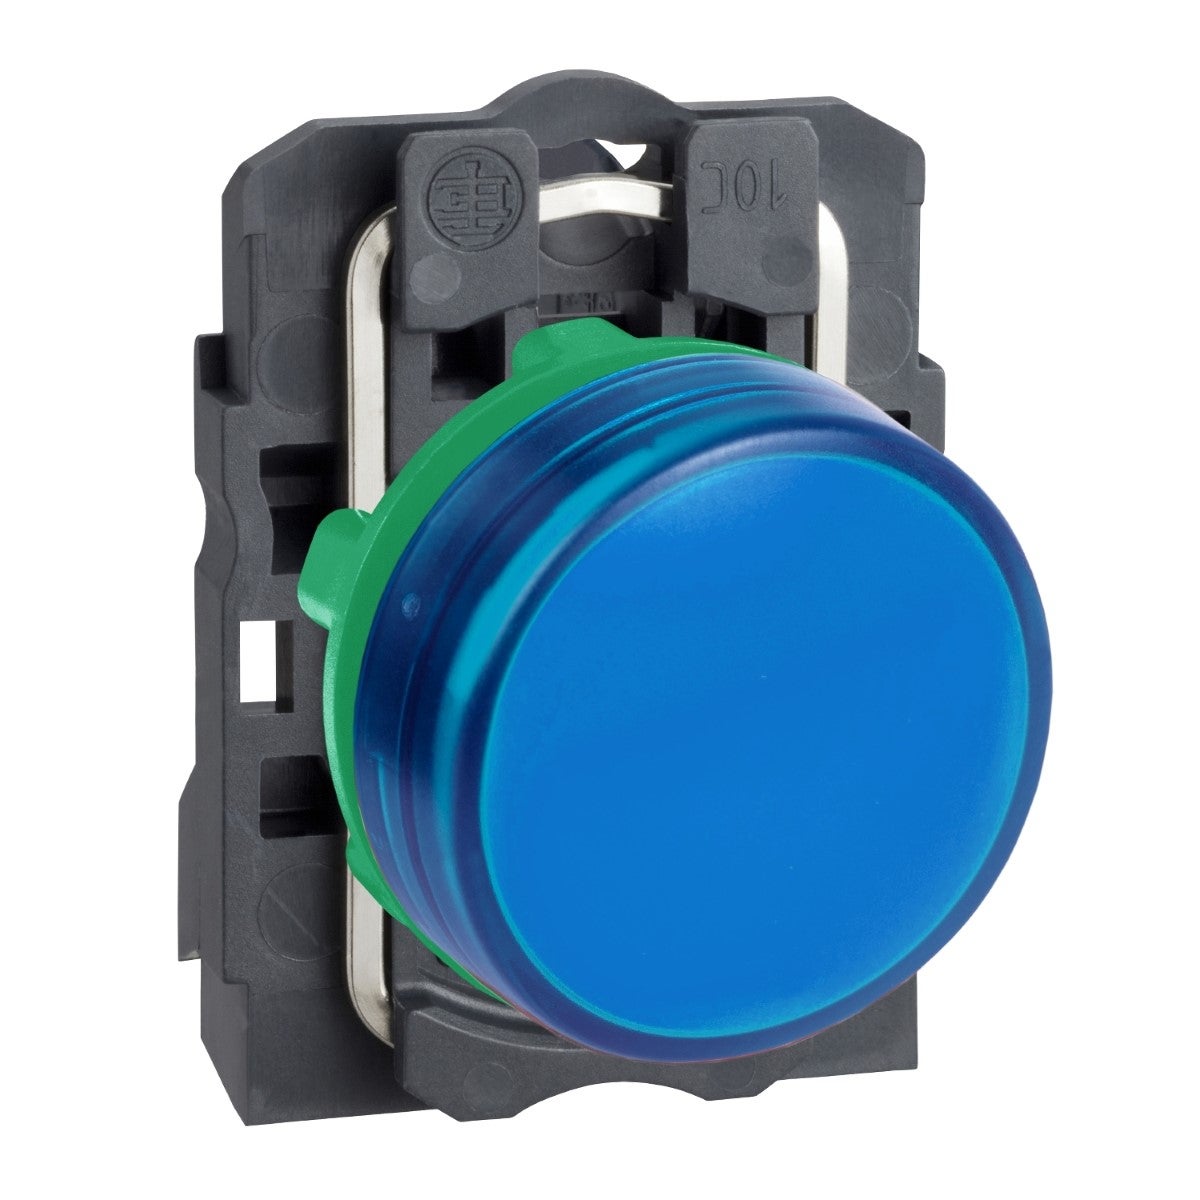 Pilot light, plastic, blue, Ã˜22, plain lens with integral LED, 110â€¦120 V AC